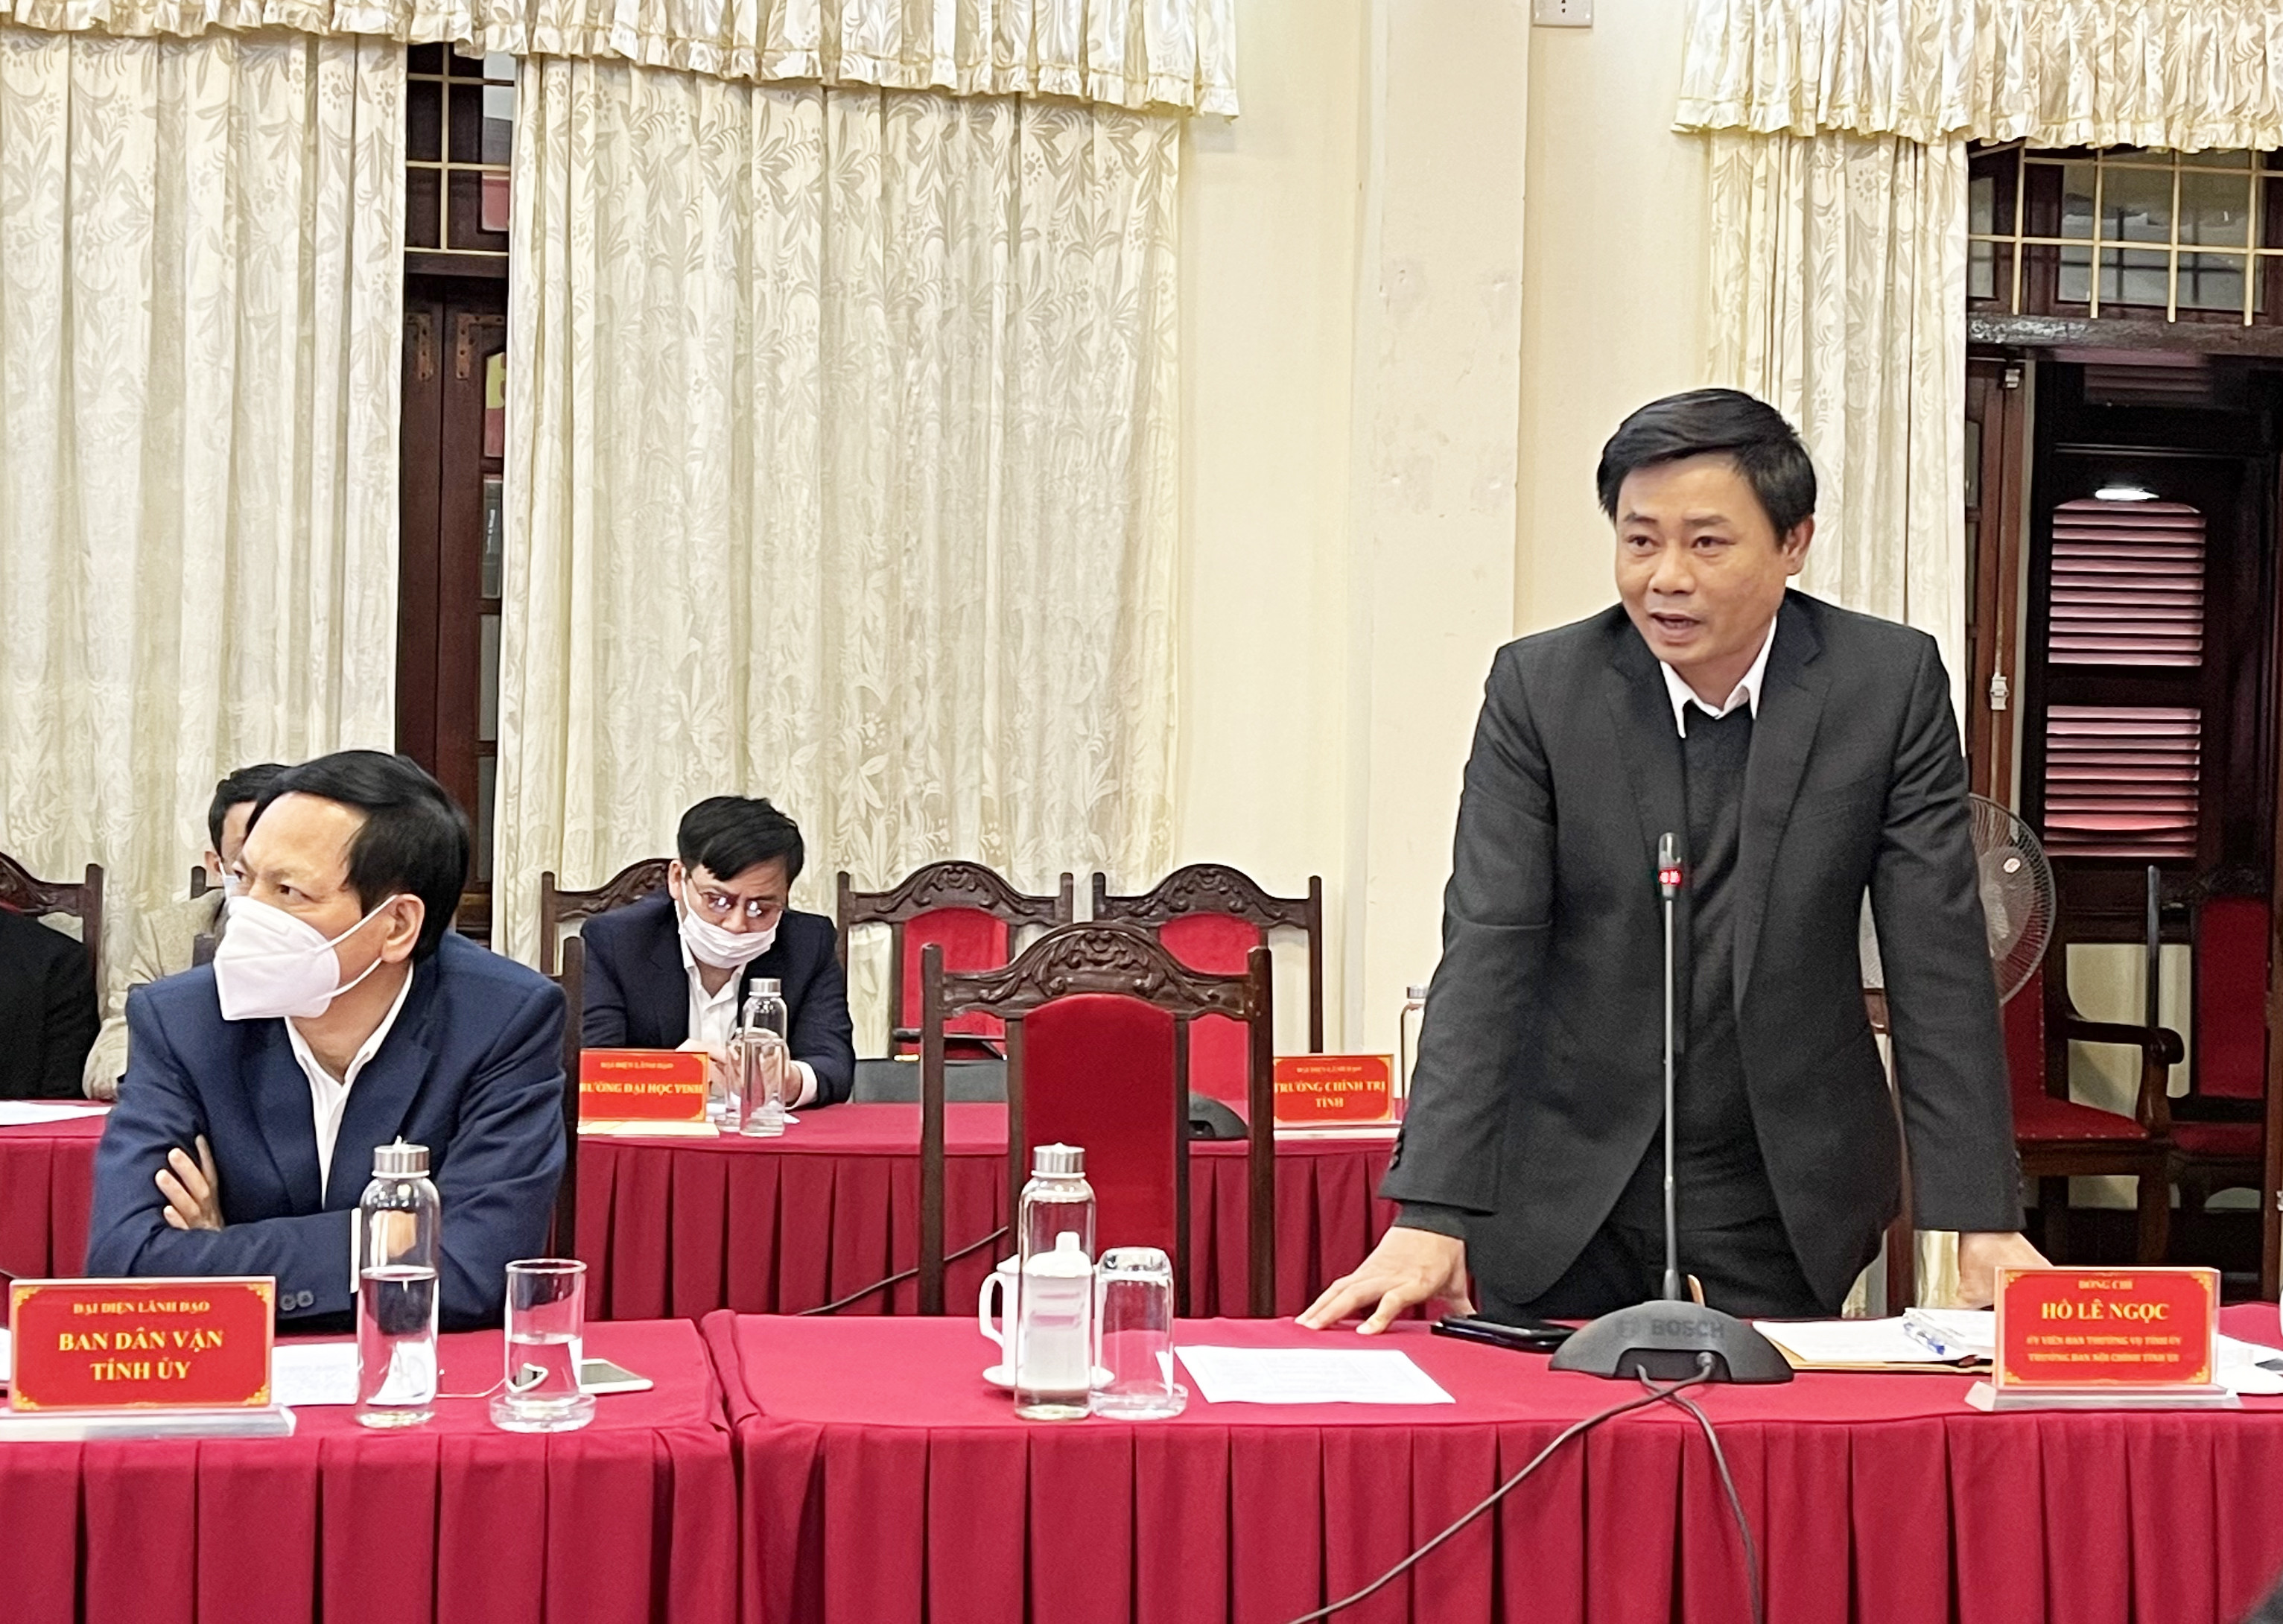 Đồng chí Hồ Lê Ngọc - Ủy viên Ban Thường vụ, Trưởng ban Nội chính Tỉnh ủy trao đổi, làm rõ một số nội dung được quan tâm tại hội nghị. Ảnh: TG